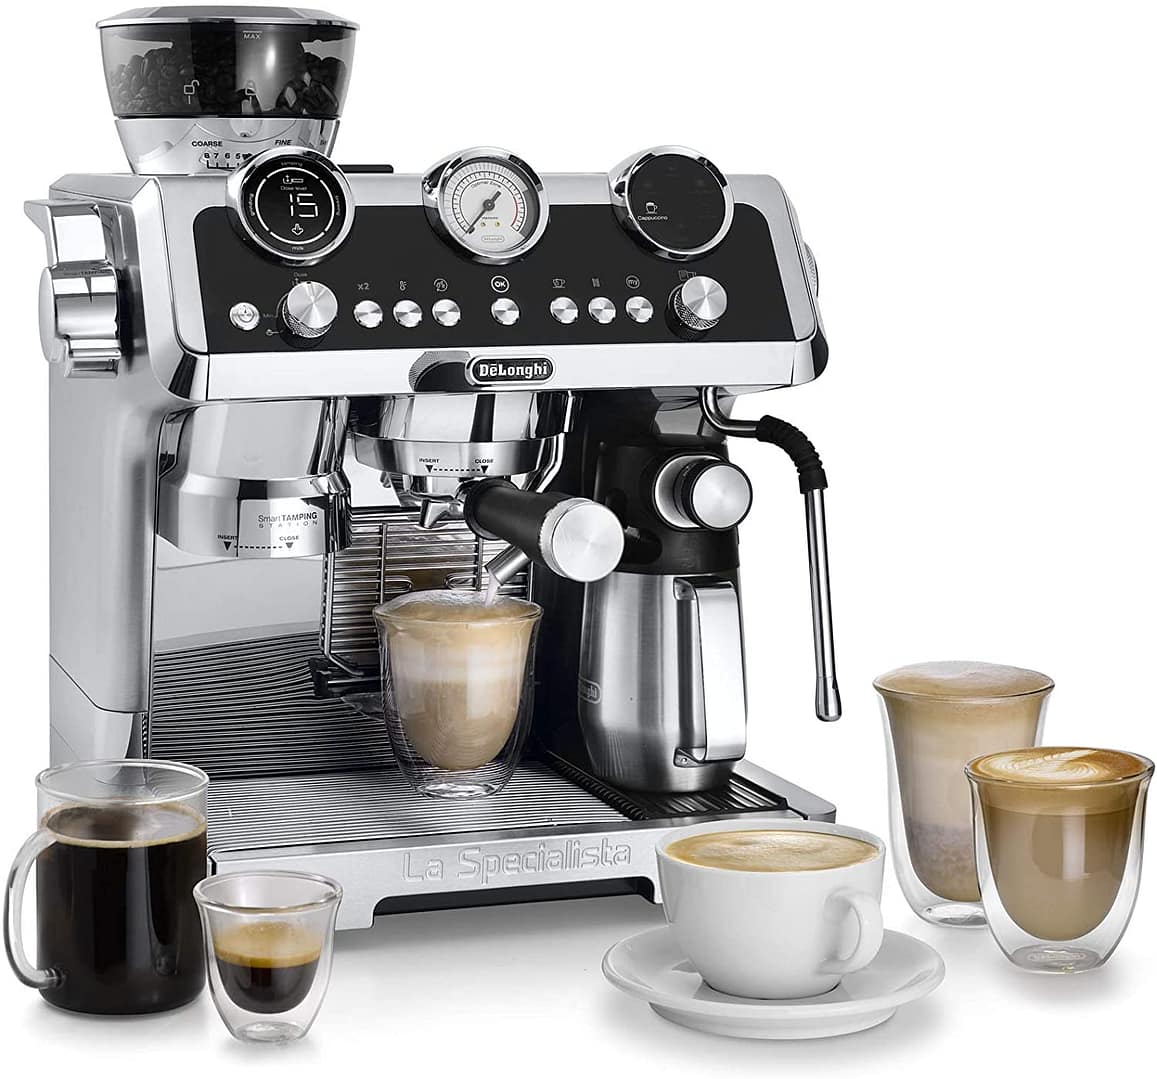 DeLonghi La Specialista Maestro Pump Espresso Coffee Machine Exclusively Available @ DE BREWERZ INDIA